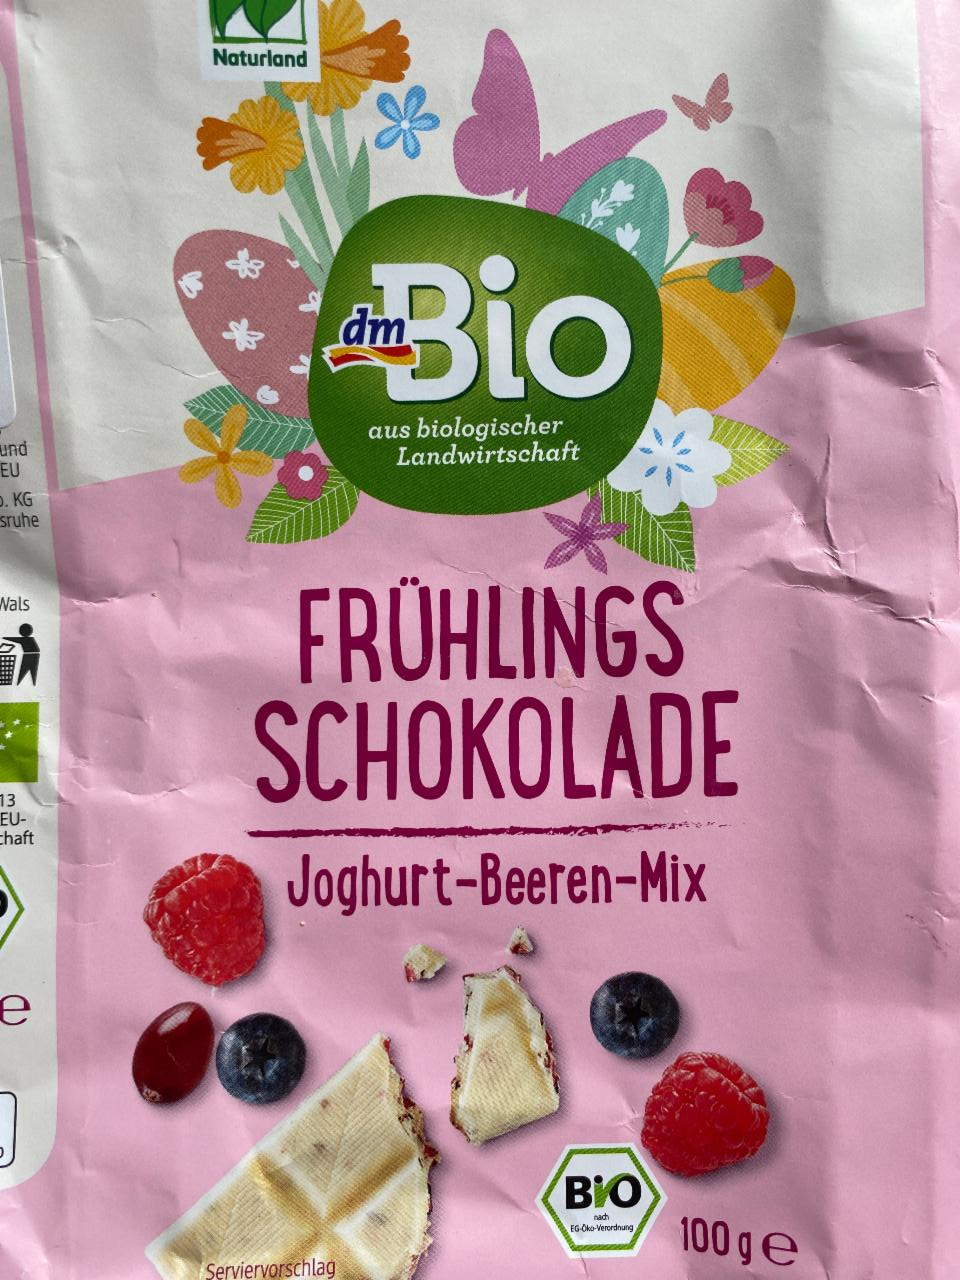 Fotografie - Frühlings Schokolade Joghurt-Beeren-Mix dmBio